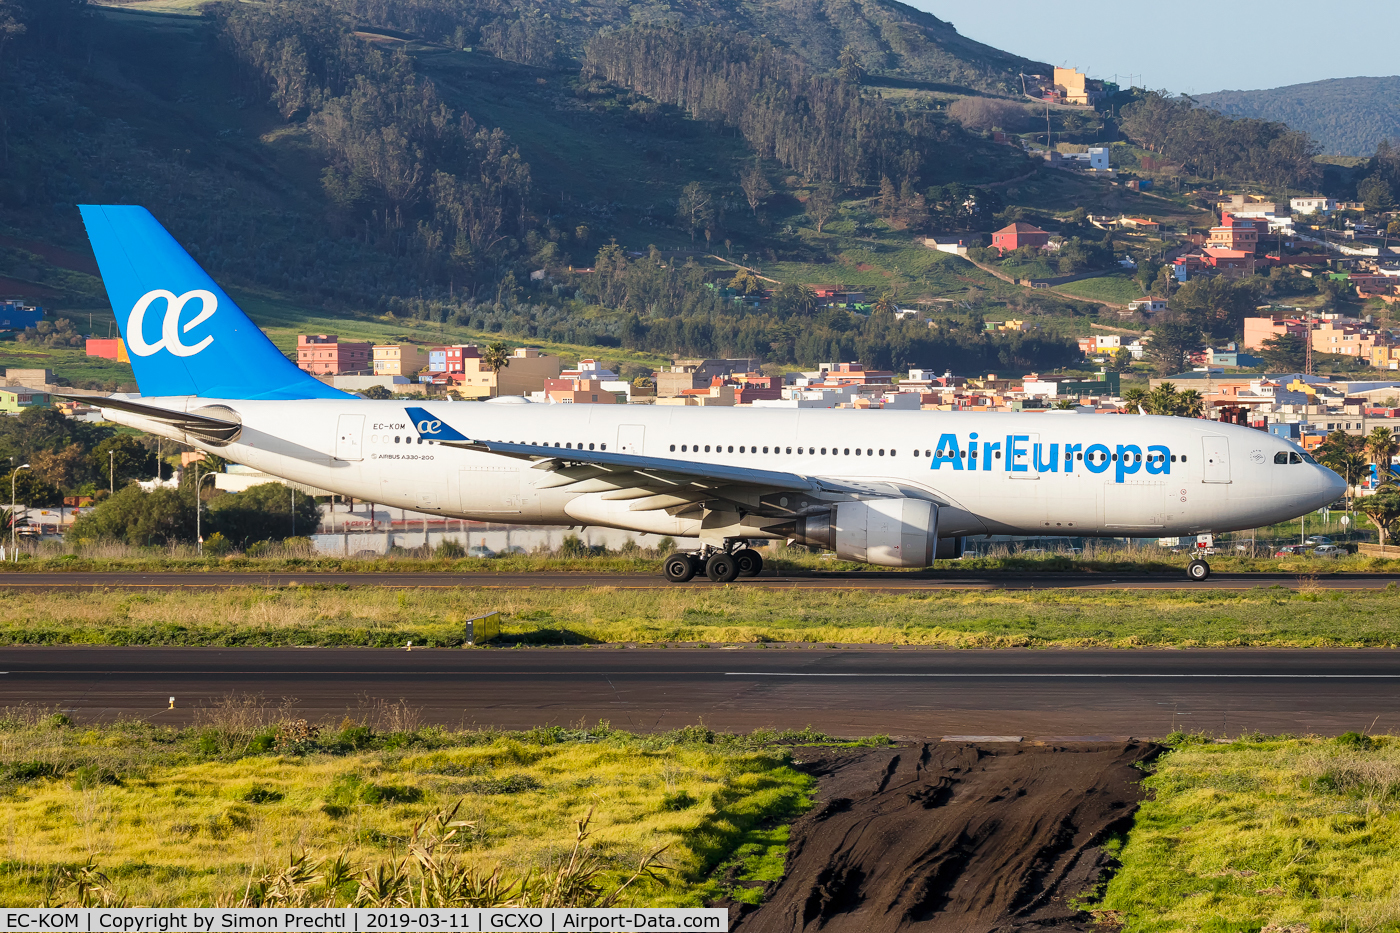 EC-KOM, 2008 Airbus A330-202 C/N 931, EC-KOM @ Tenerife Norte Airport